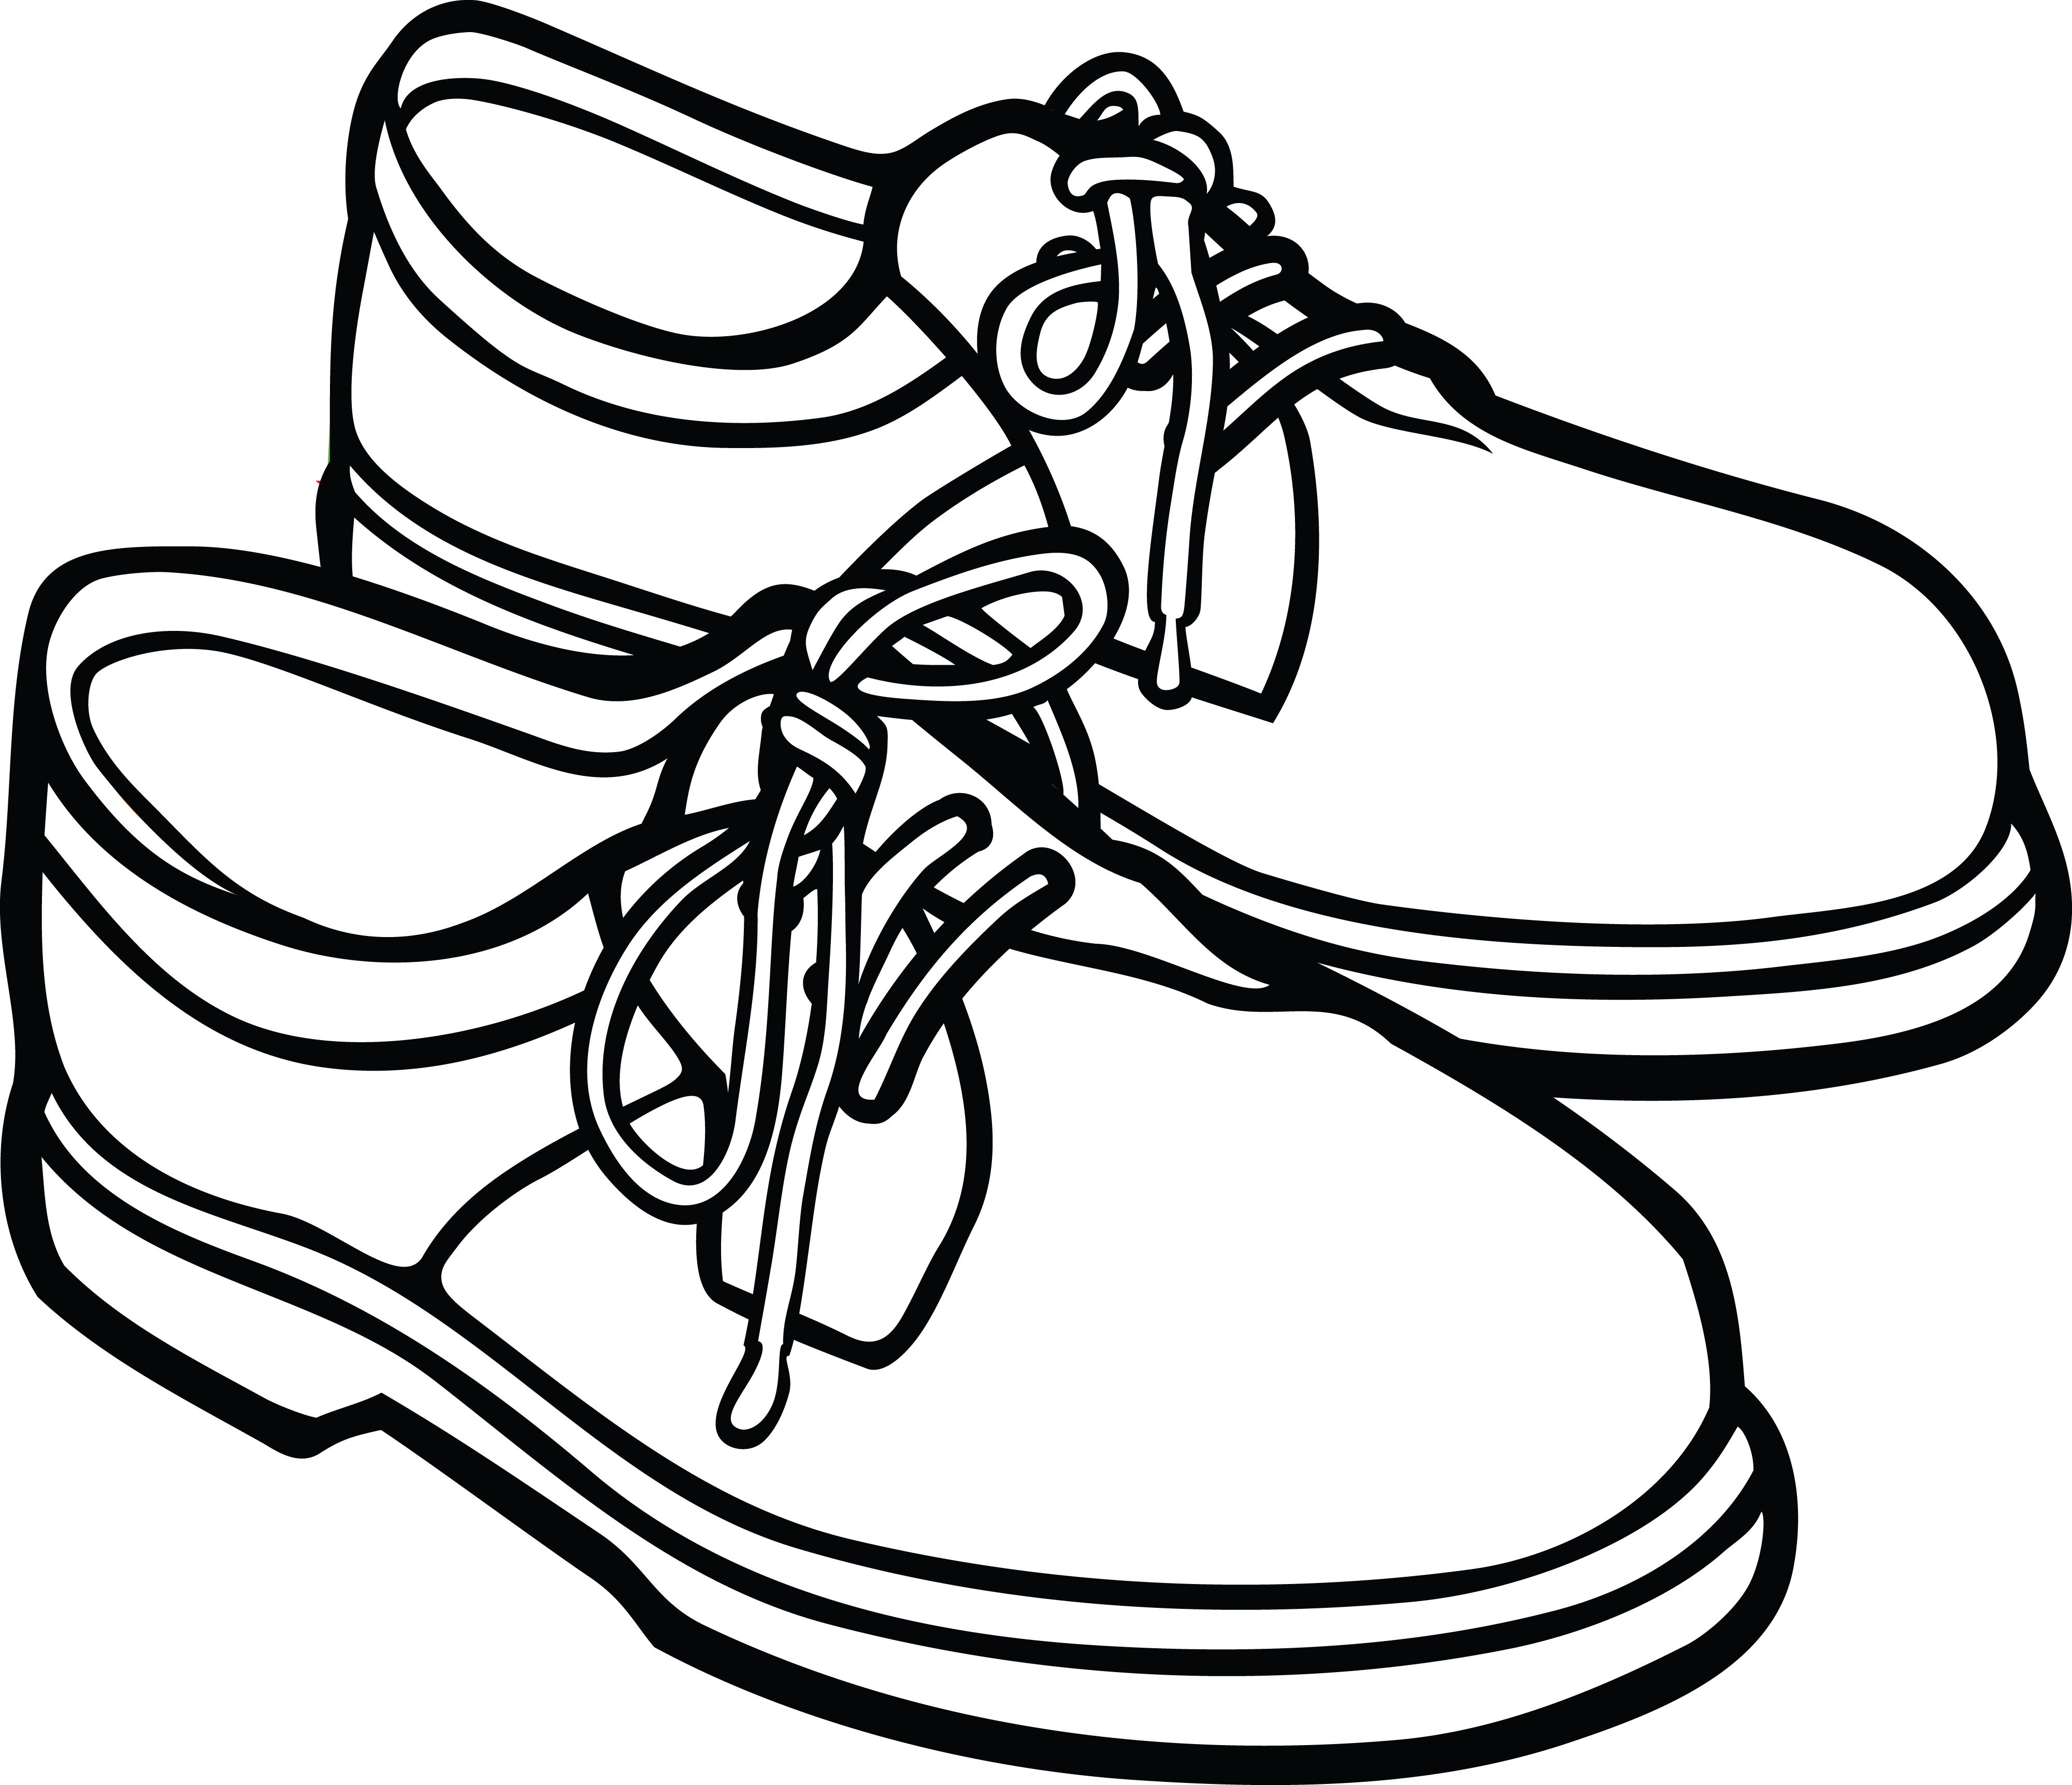 men shoes clip art